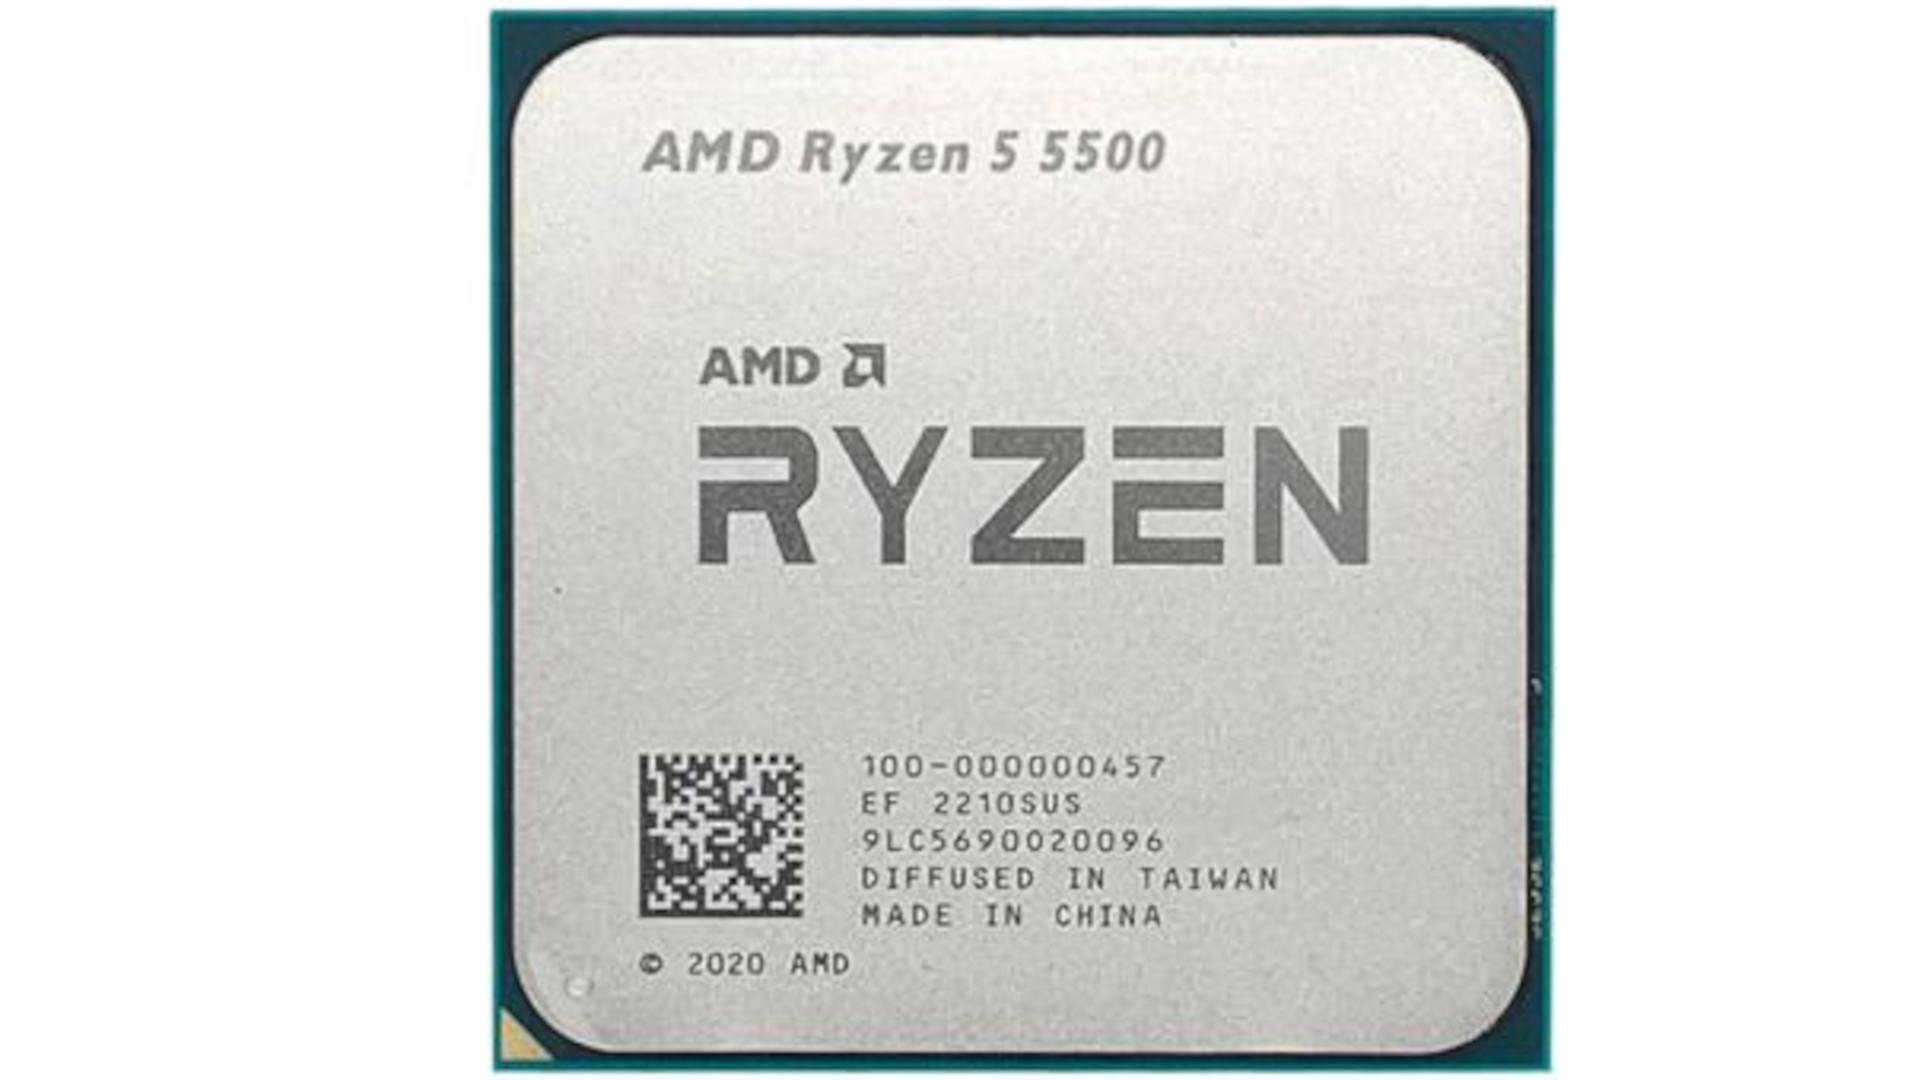 AMD Ryzen 5 5500 2